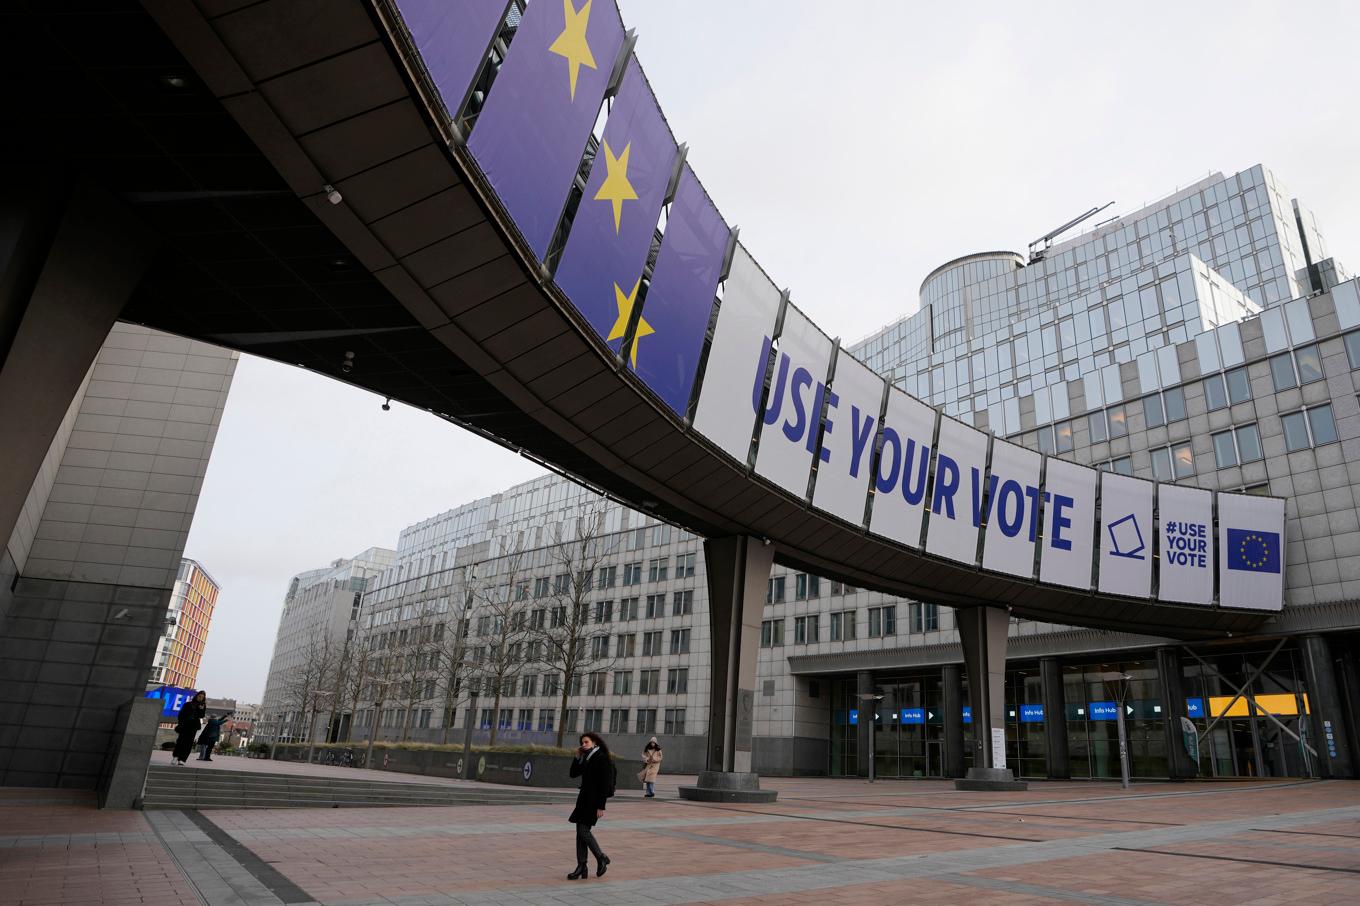 Arkivbild på Europaparlamentet i Bryssel, varifrån en gripen tysk misstänks ha spionerat för Kinas räkning. Foto: Virginia Mayo/AP/TT